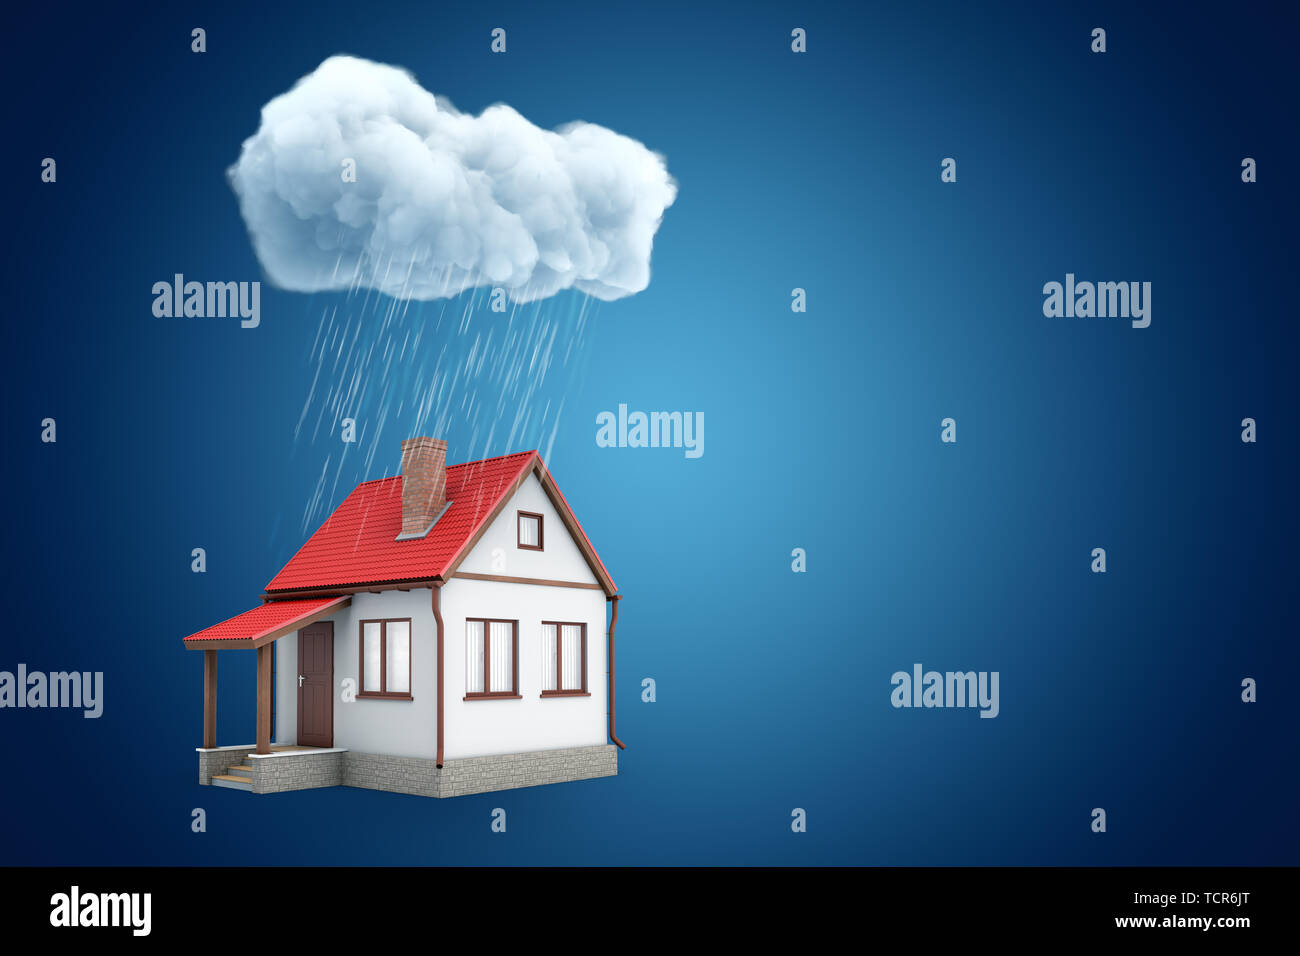 Le rendu 3D de la petite maison individuelle en vertu de l'article nuage pluvieux, sur fond bleu avec copie espace. Banque D'Images